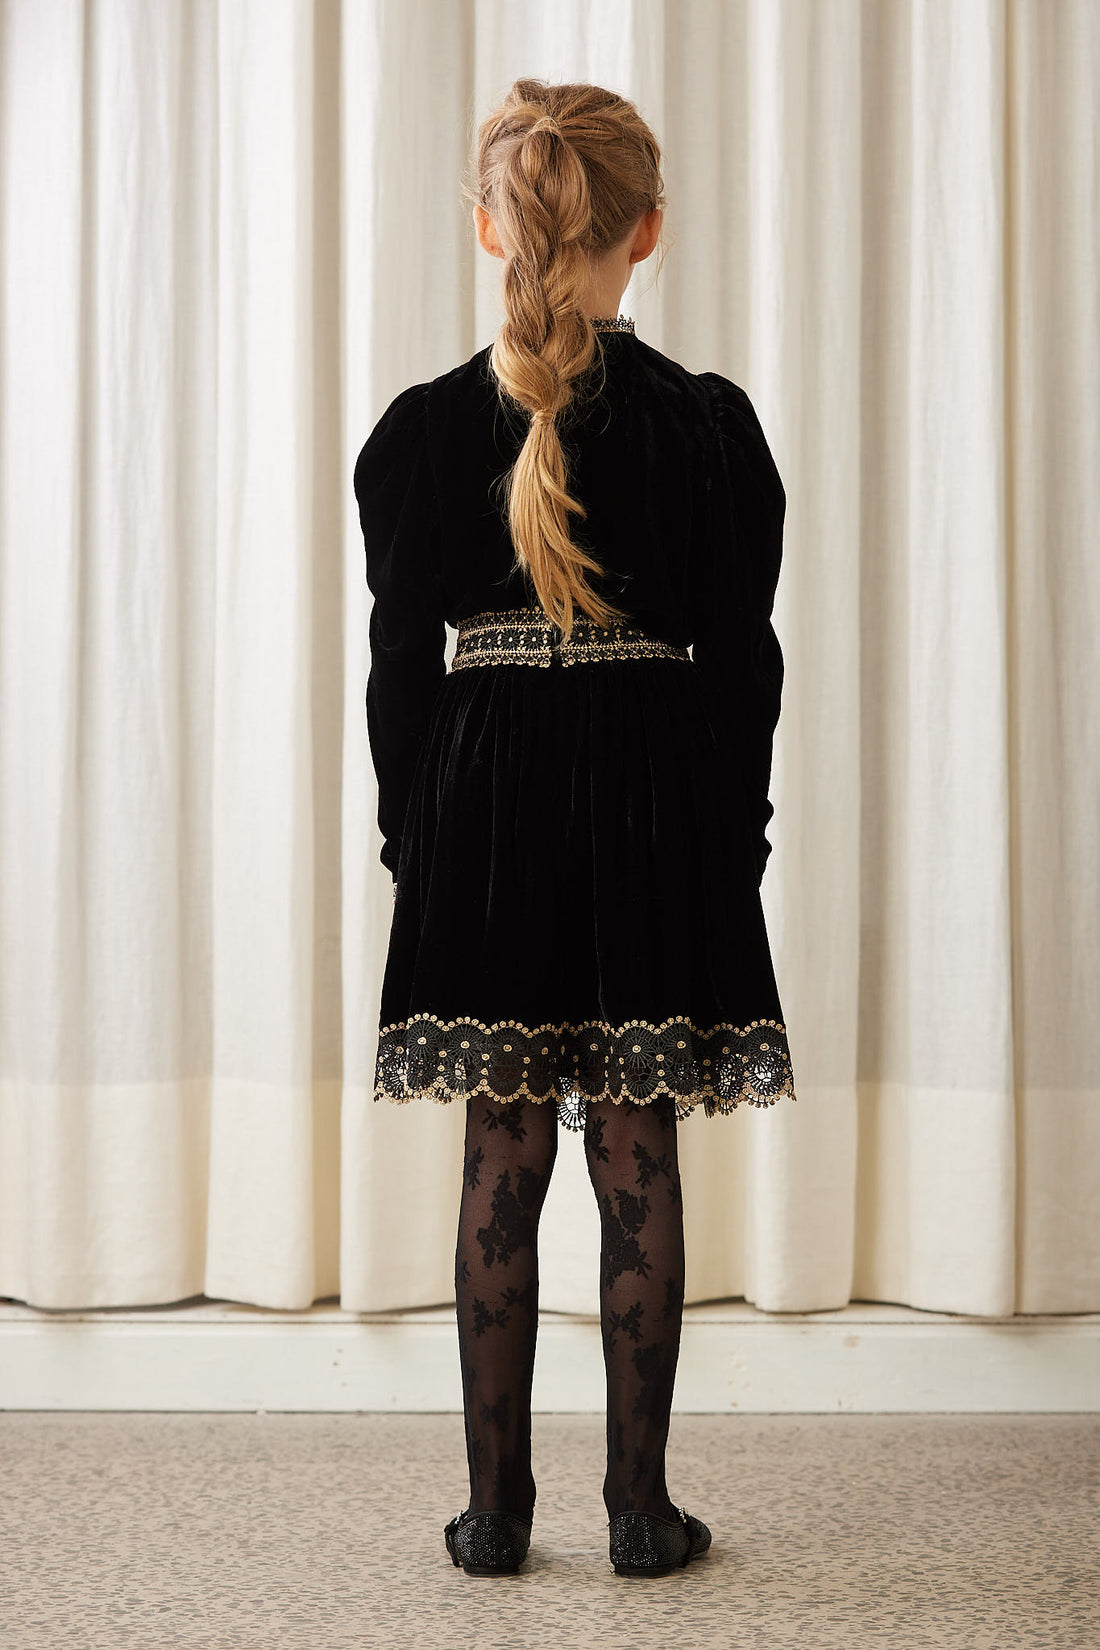 Petite Amalie Black Lace Trimmed Velvet Skirt